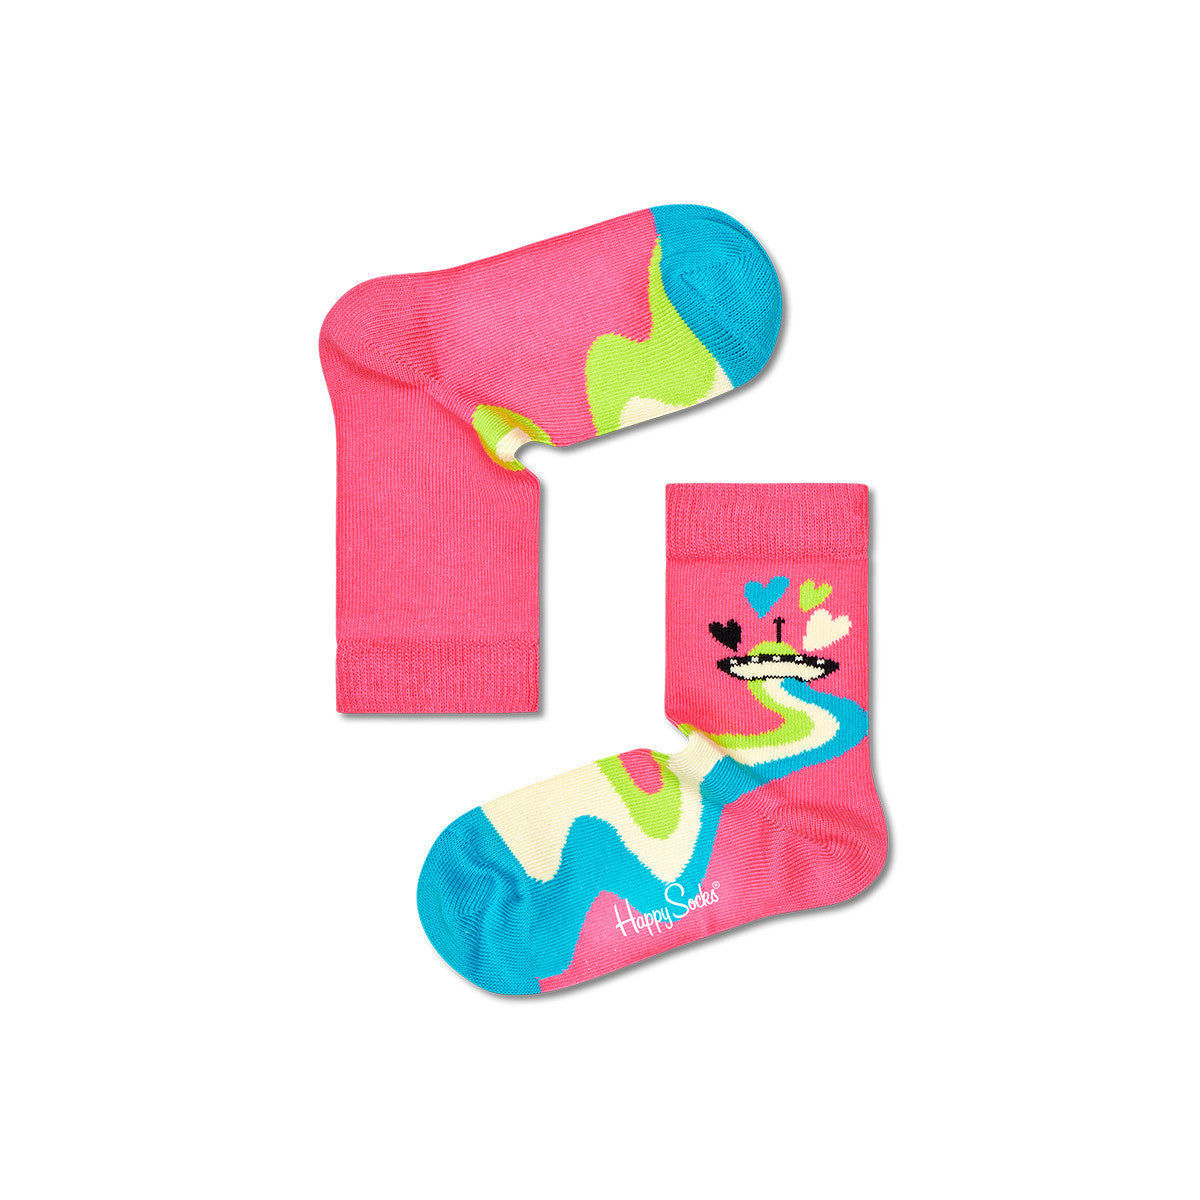 Kids Hearts & Stars Socks Gift Set | 3 Pack (3303)